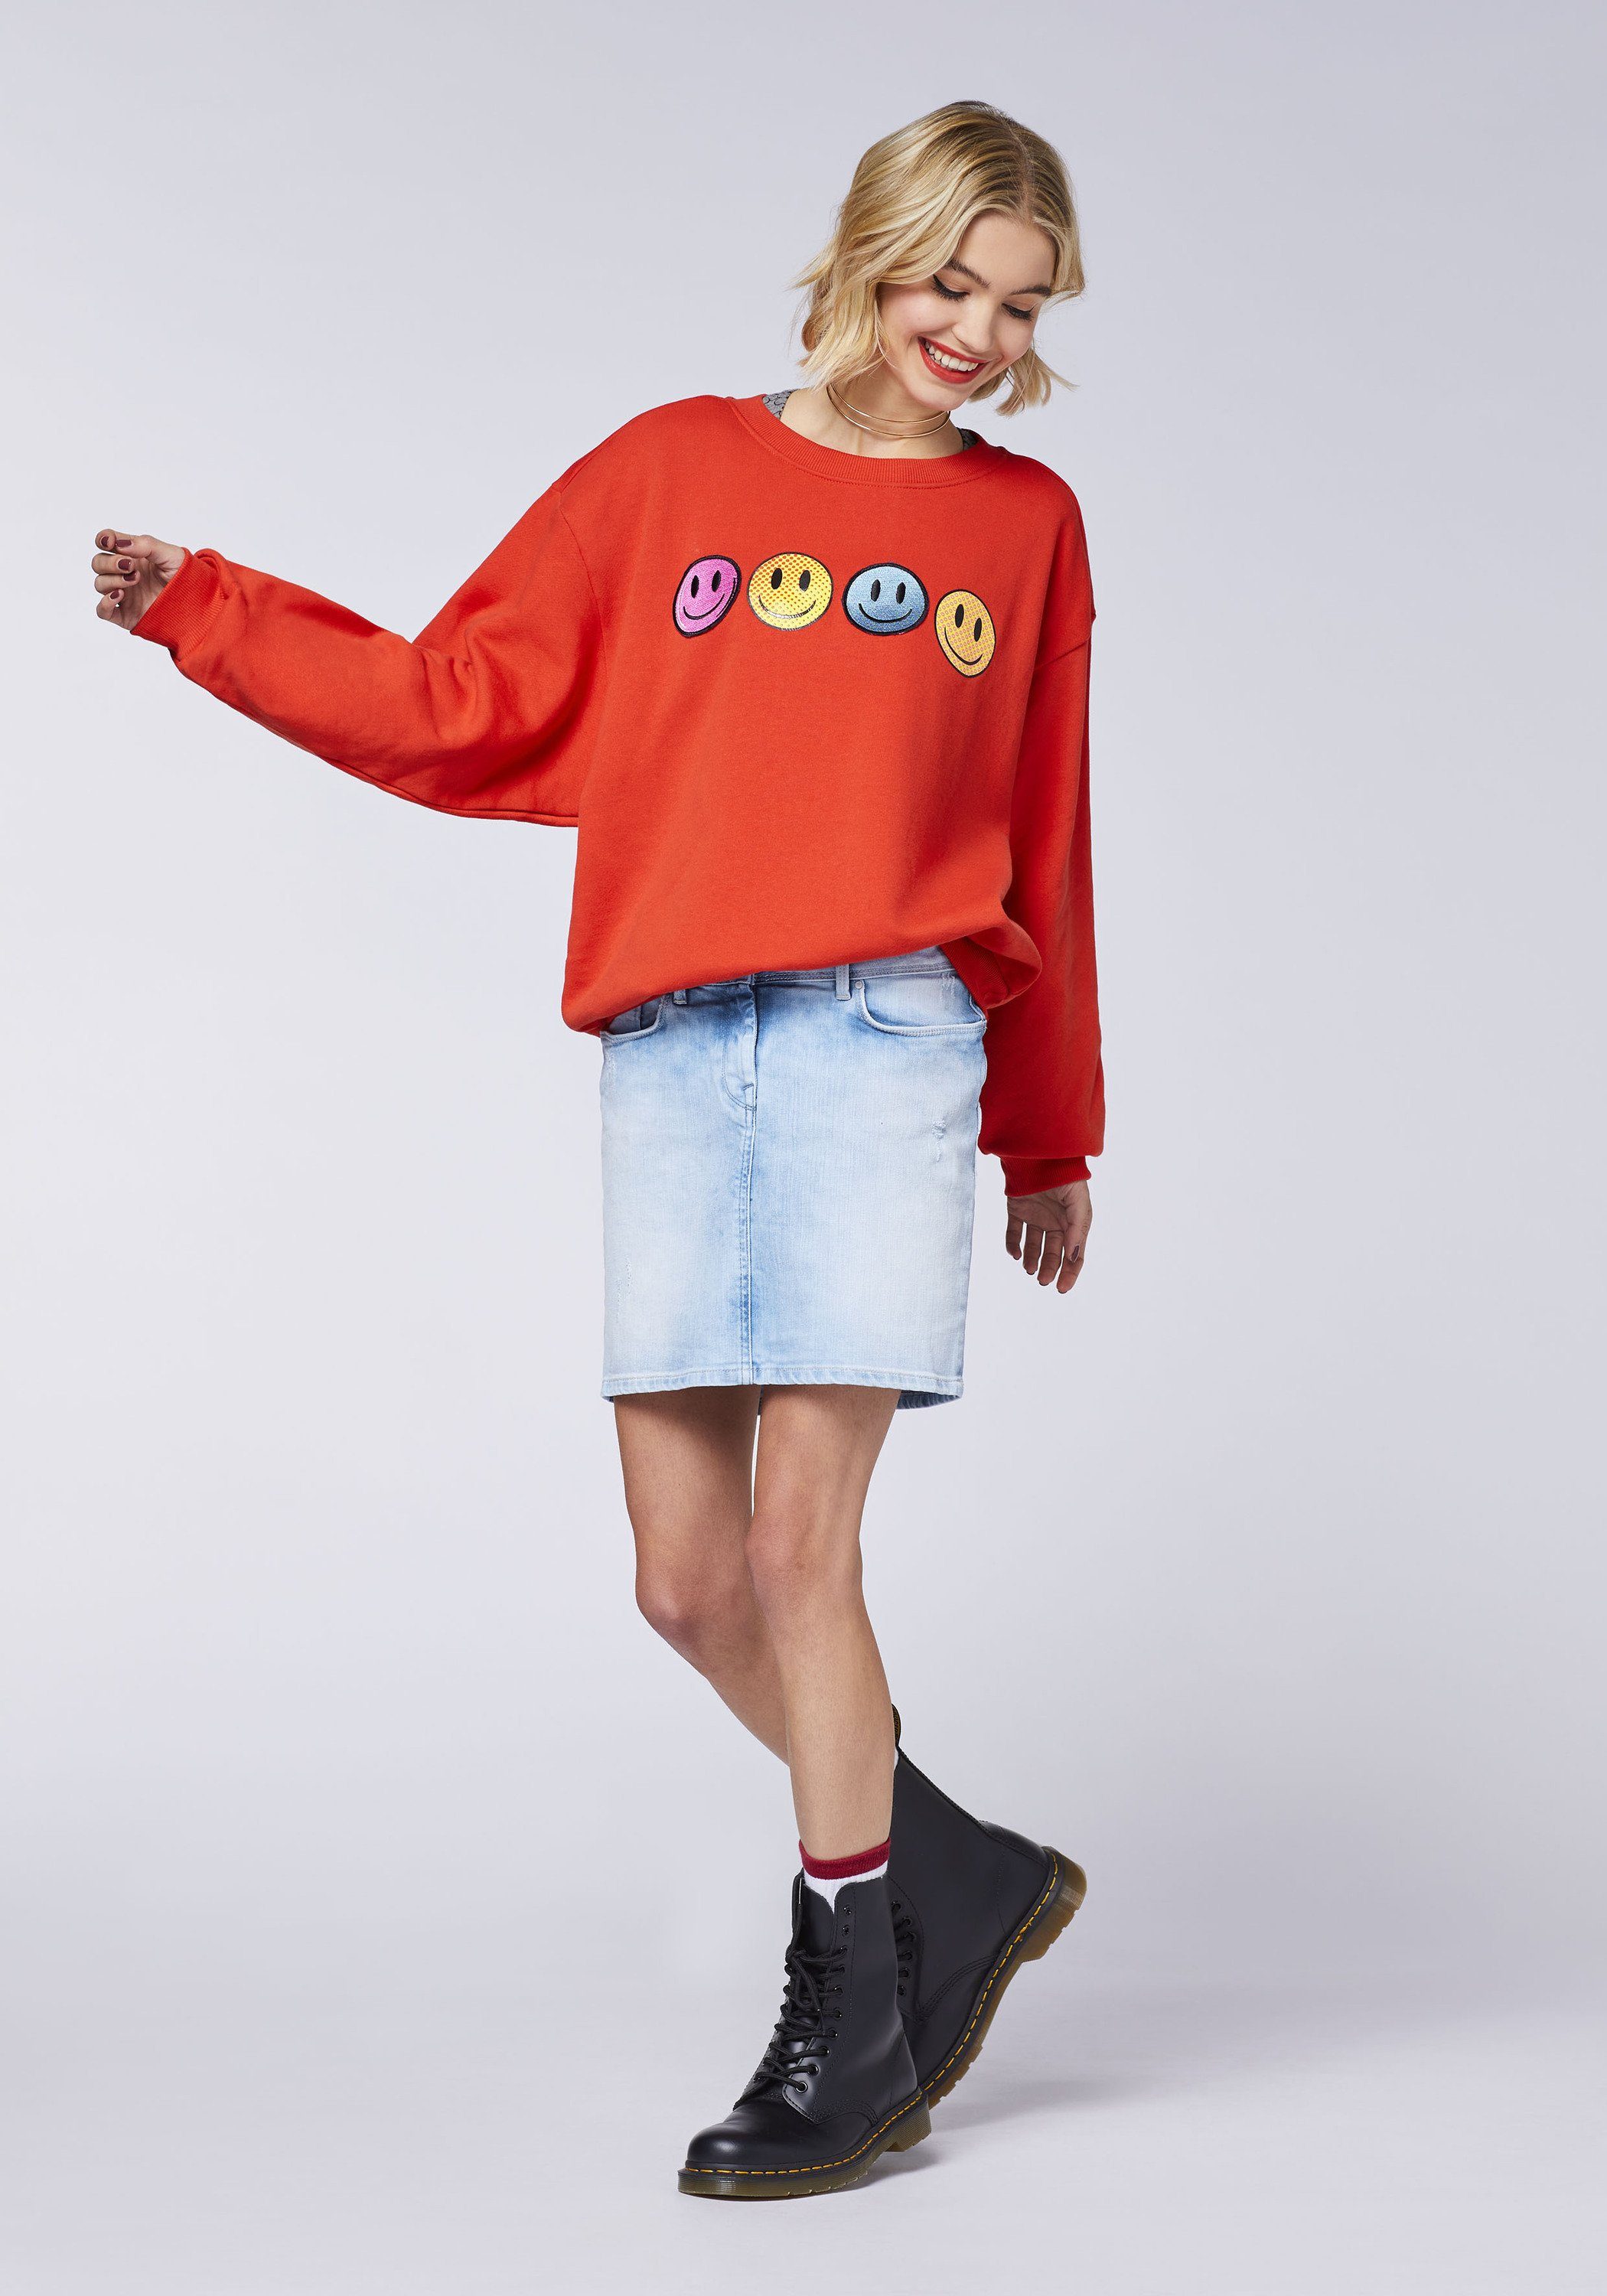 Emoji Grinsegesicht-Motiven mit Sweatshirt